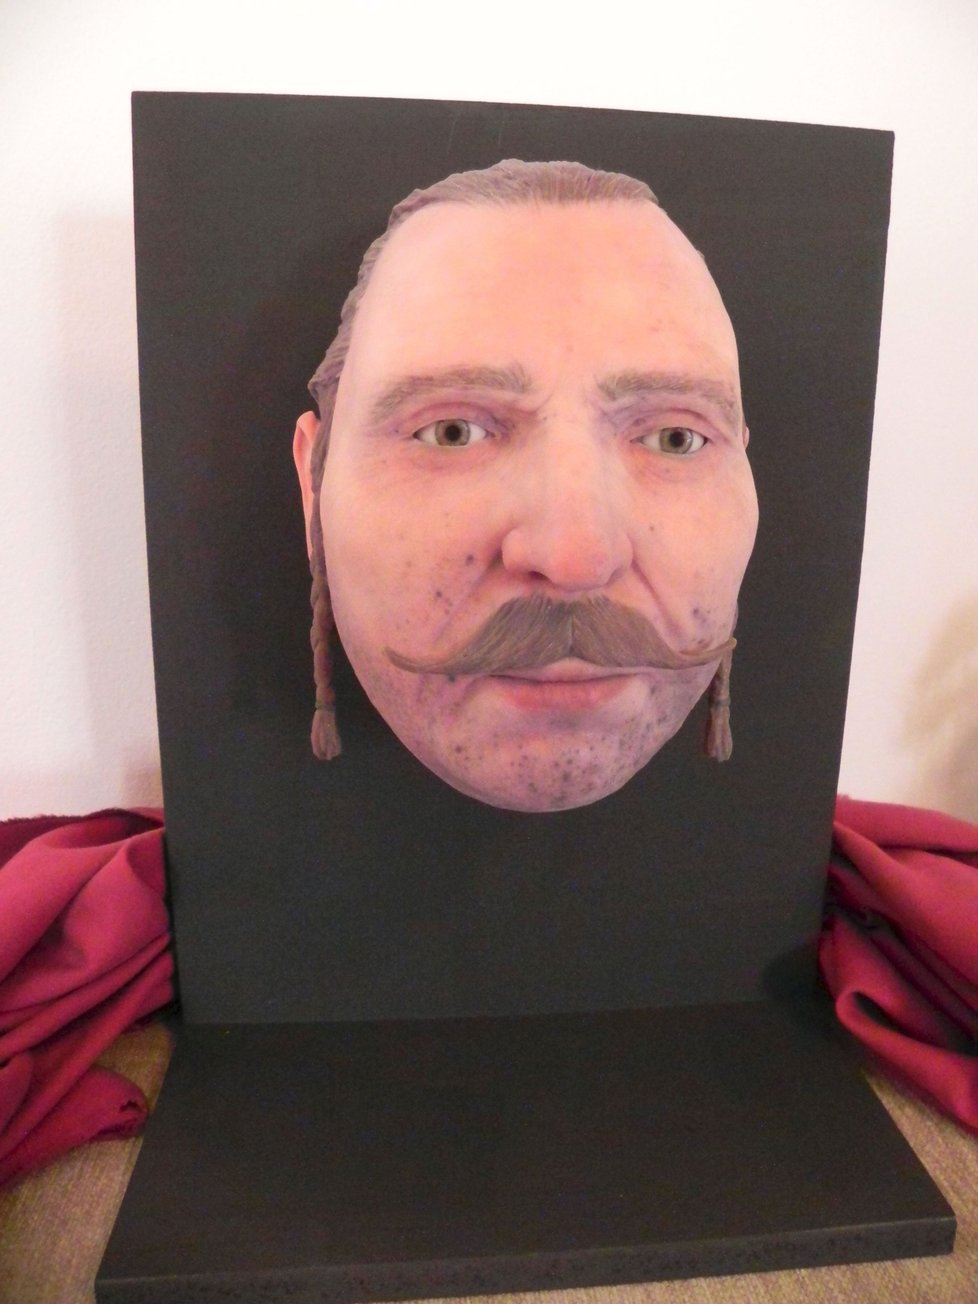 3D model obličeje ukázal, že Trenck měl oproti dobovým portrétům širší a asymetrickou tvář.